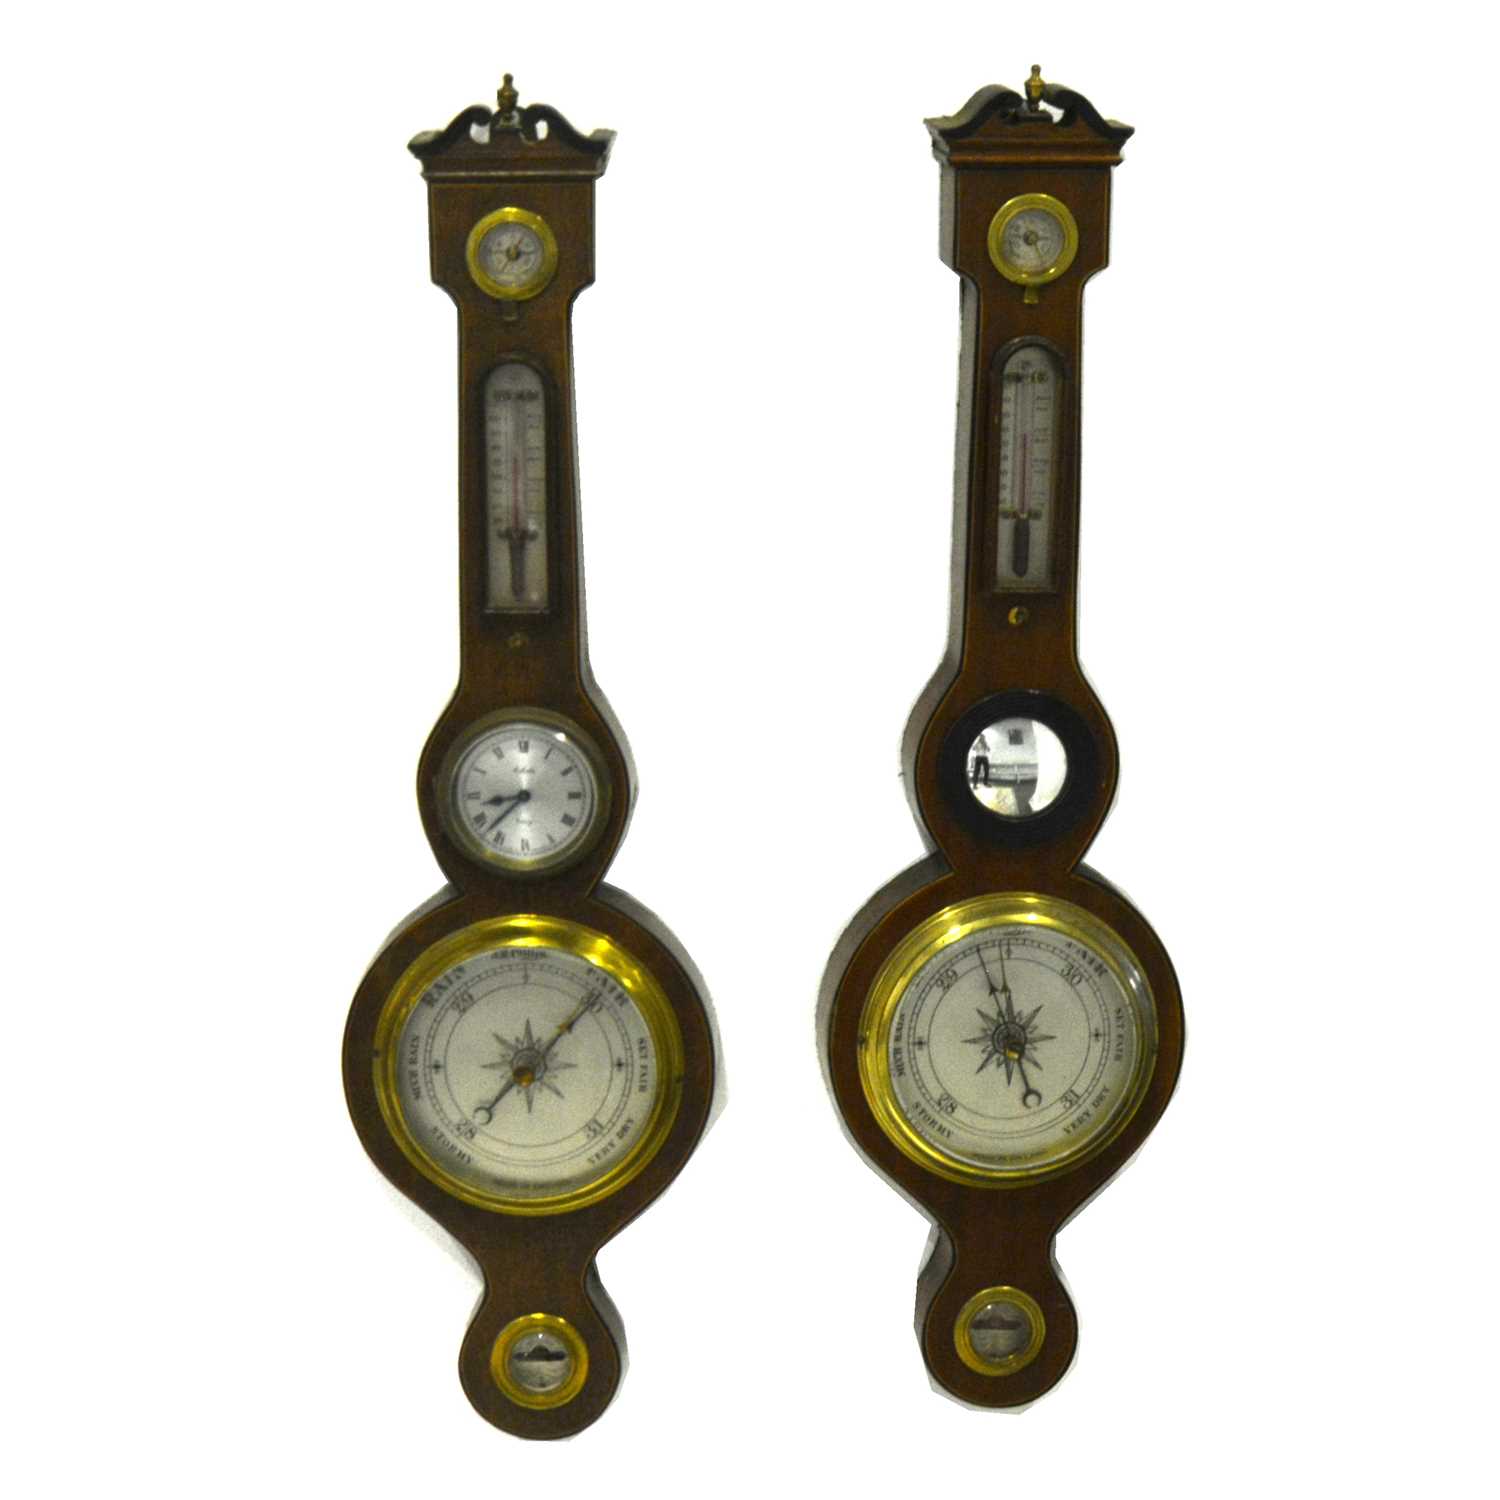 Lot 152 - A small mahogany banjo shape wall barometer, and a similar barometer